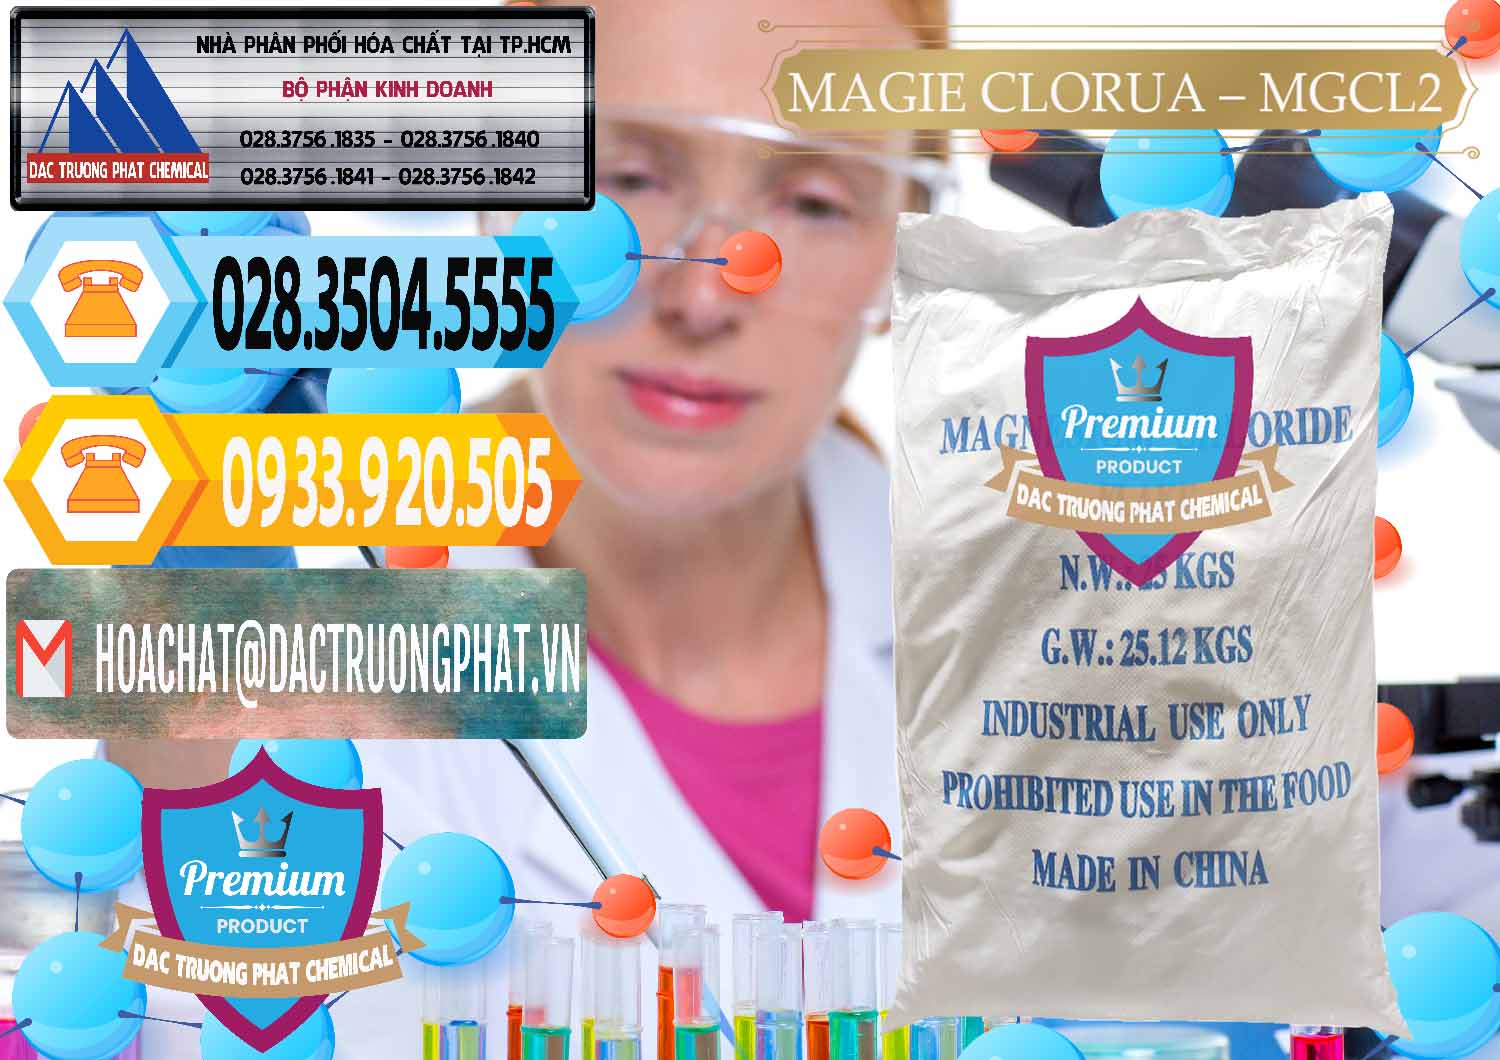 Bán và cung ứng Magie Clorua – MGCL2 96% Dạng Vảy Trung Quốc China - 0091 - Cty chuyên bán _ cung cấp hóa chất tại TP.HCM - hoachattayrua.net